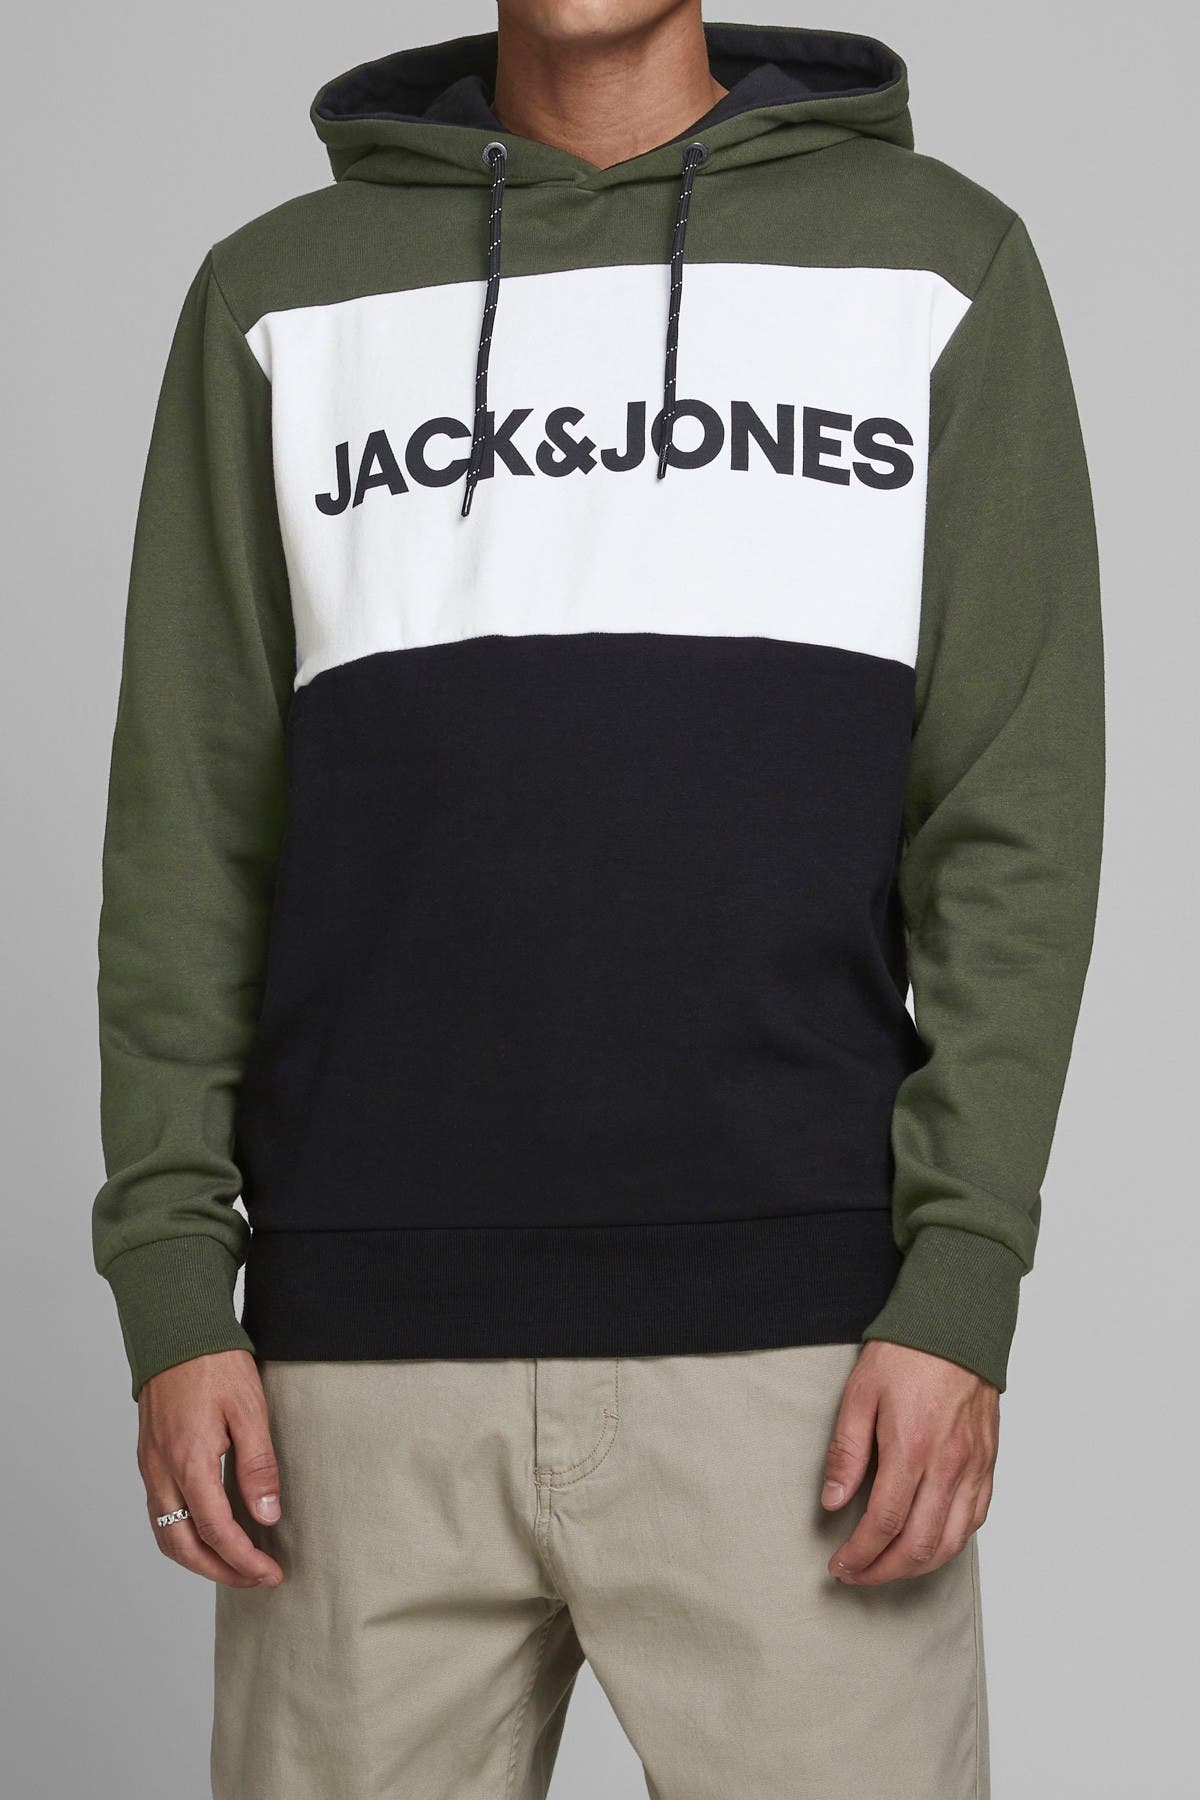 Jack & Jones Logo Colorblock Hooded Sweatshirt In Dark Grey2